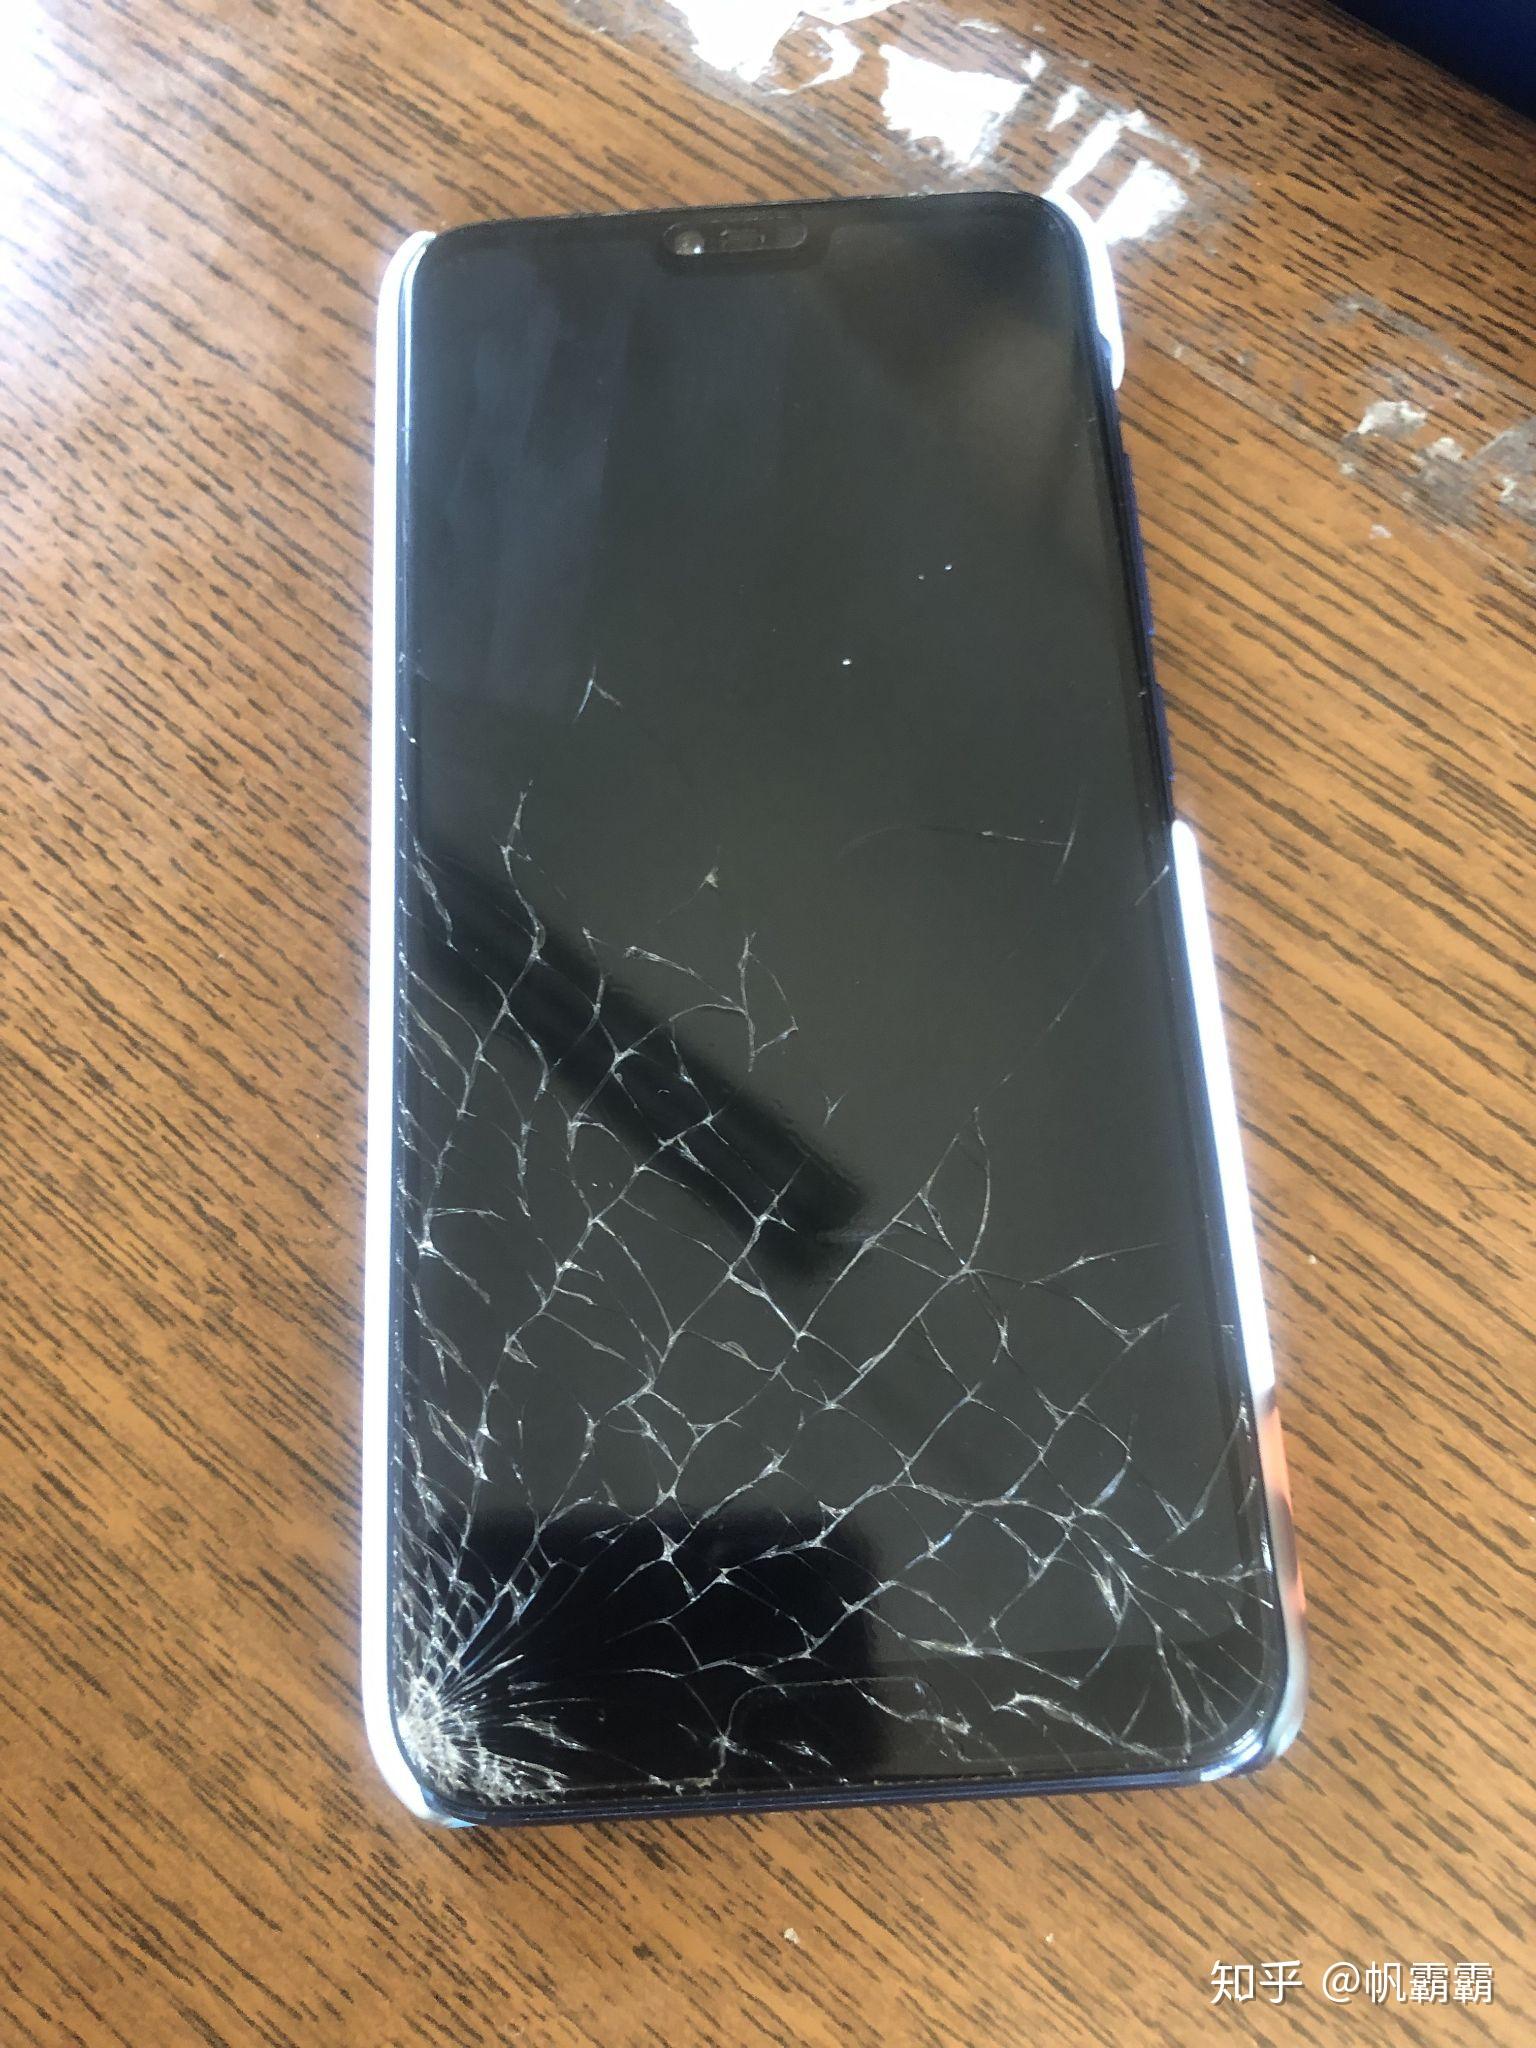 手机外屏碎了 有没有必要换屏幕总成? 